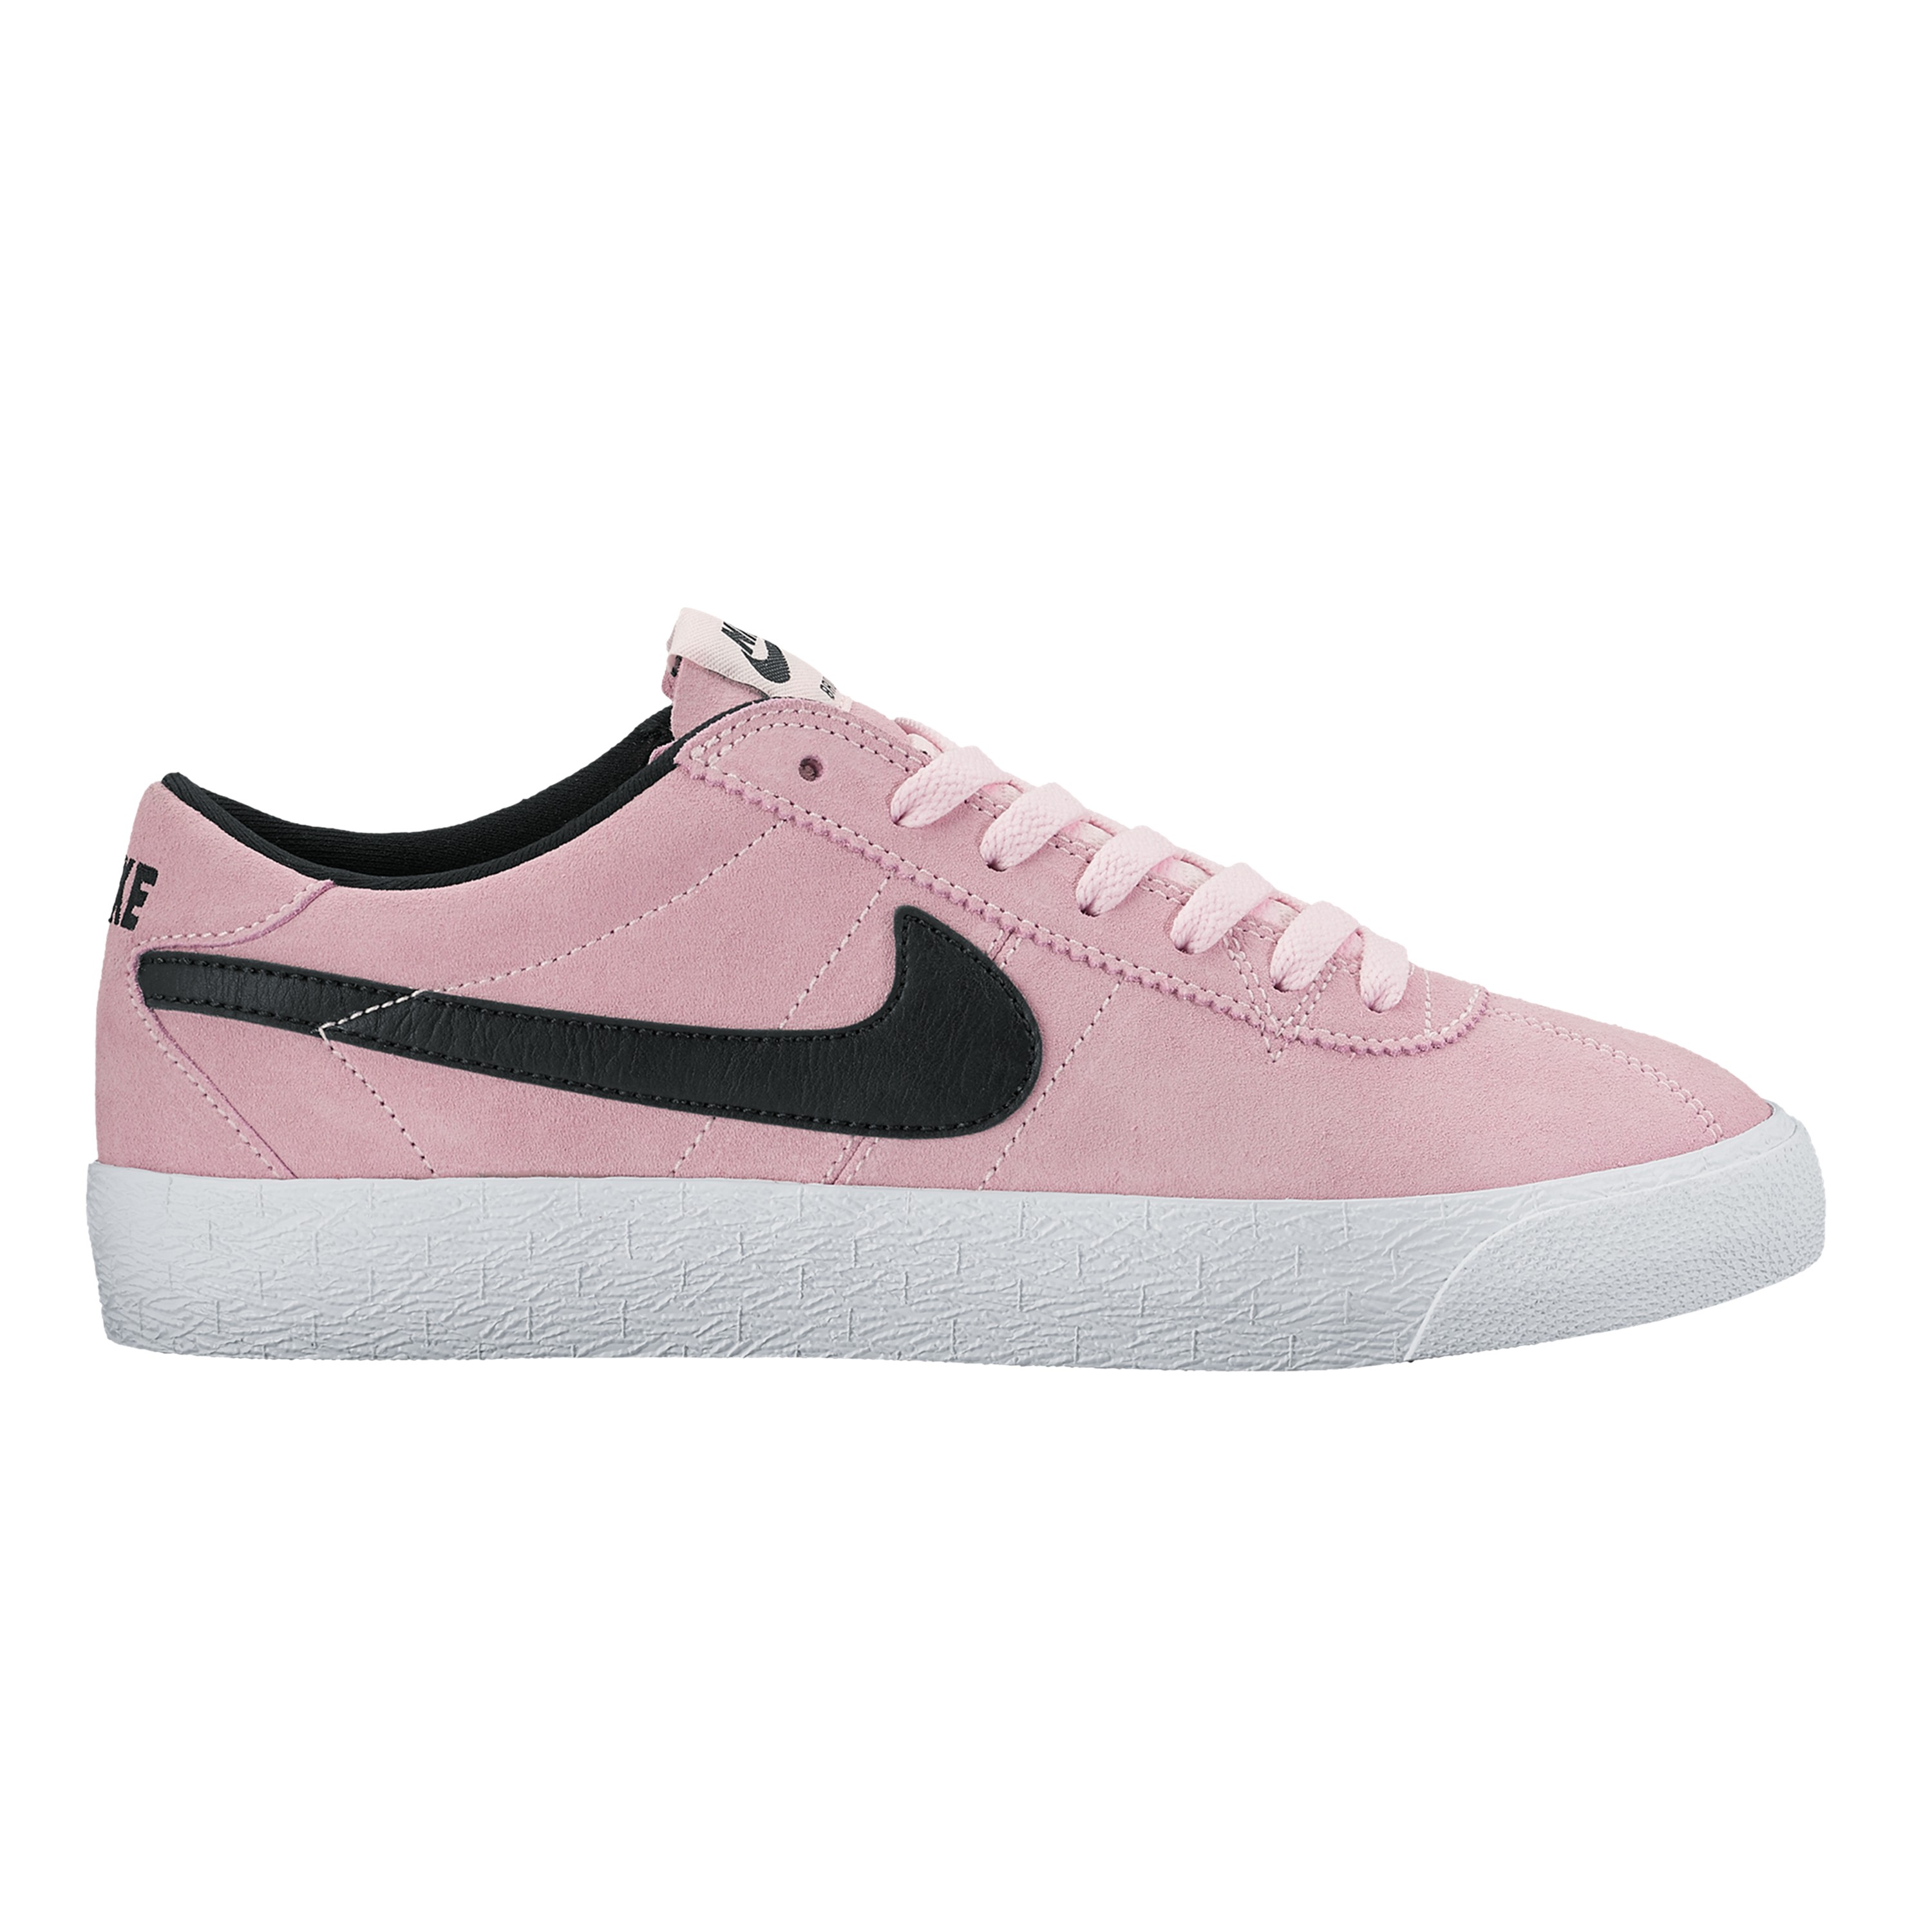 Nike SB Zoom Bruin Premium SE (Prism Pink/Black-White) Consortium.